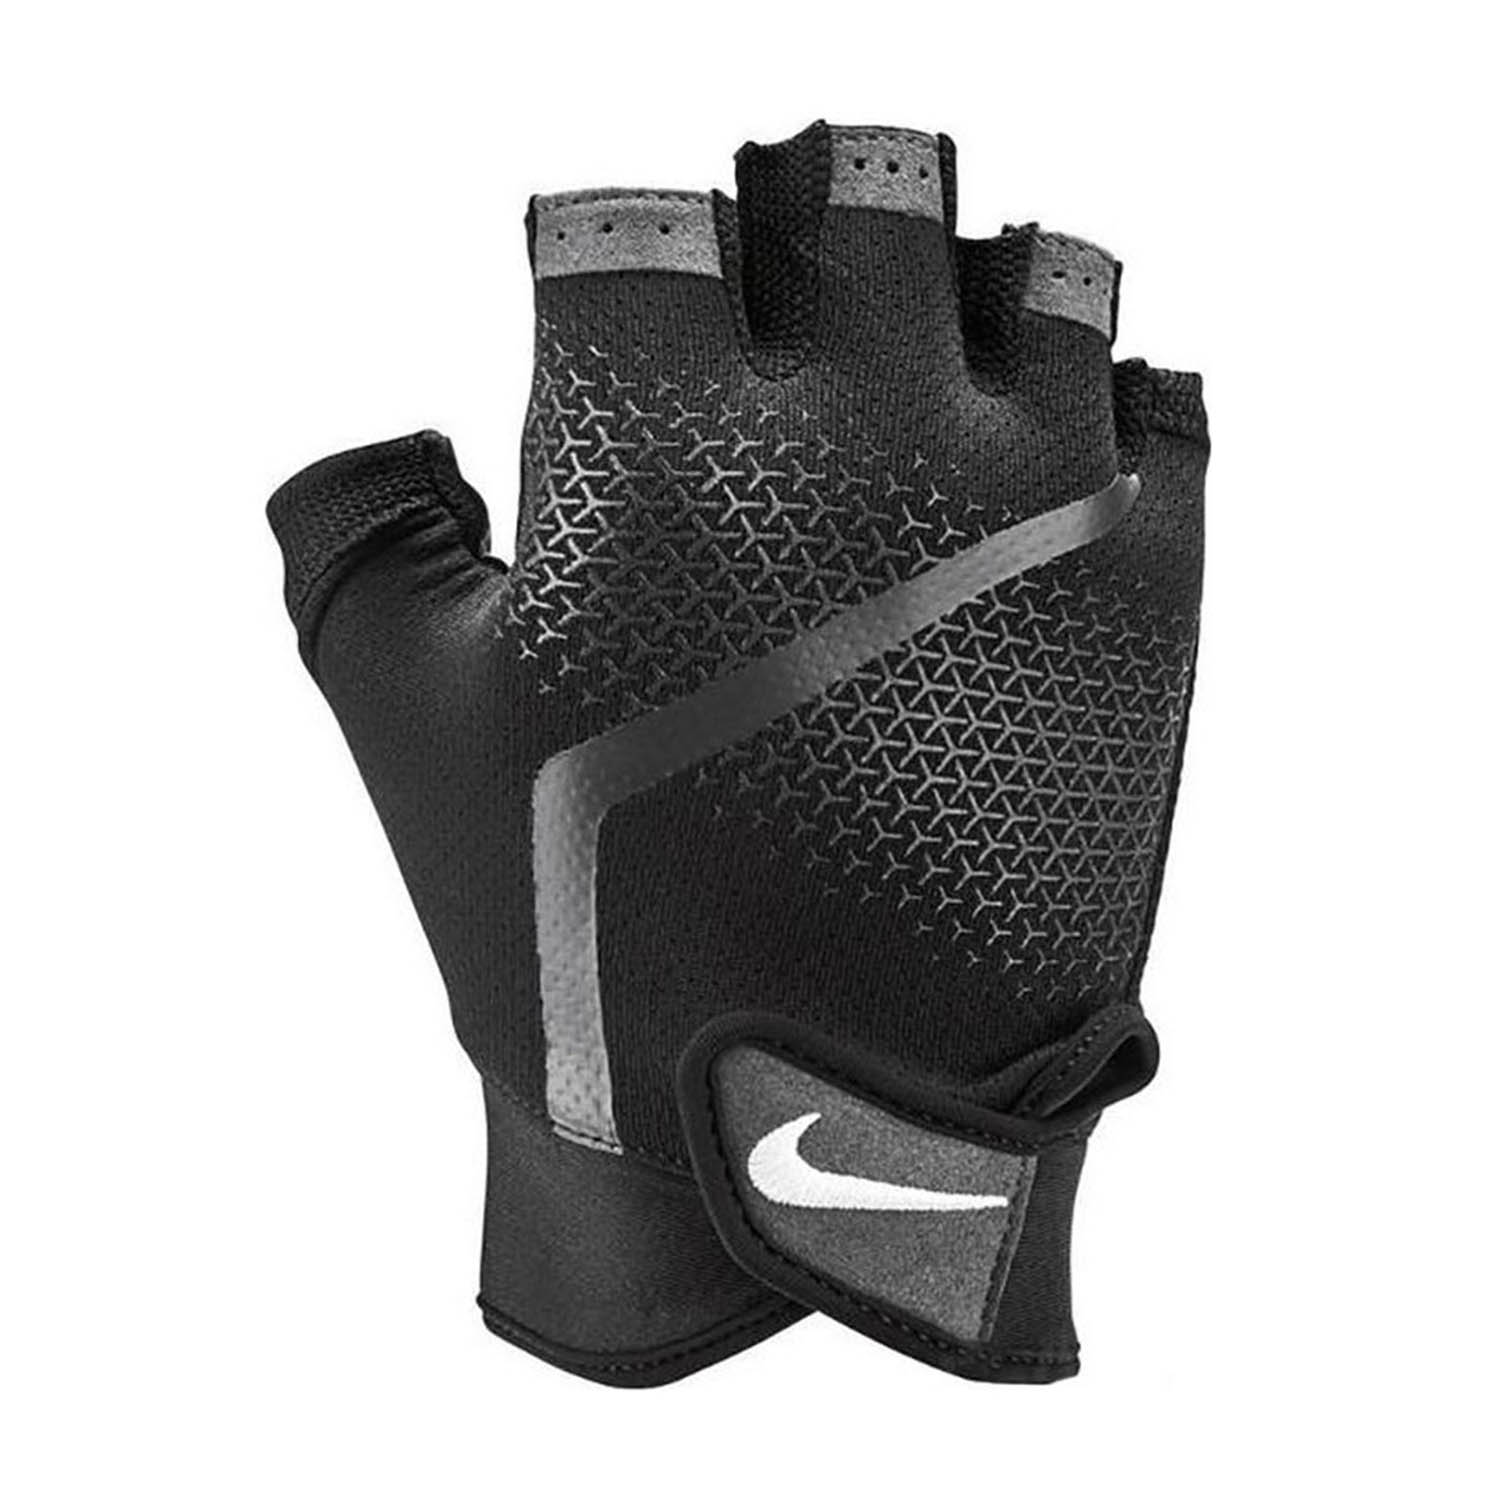 Nike Extreme Men's Fitness Training Gloves - Black